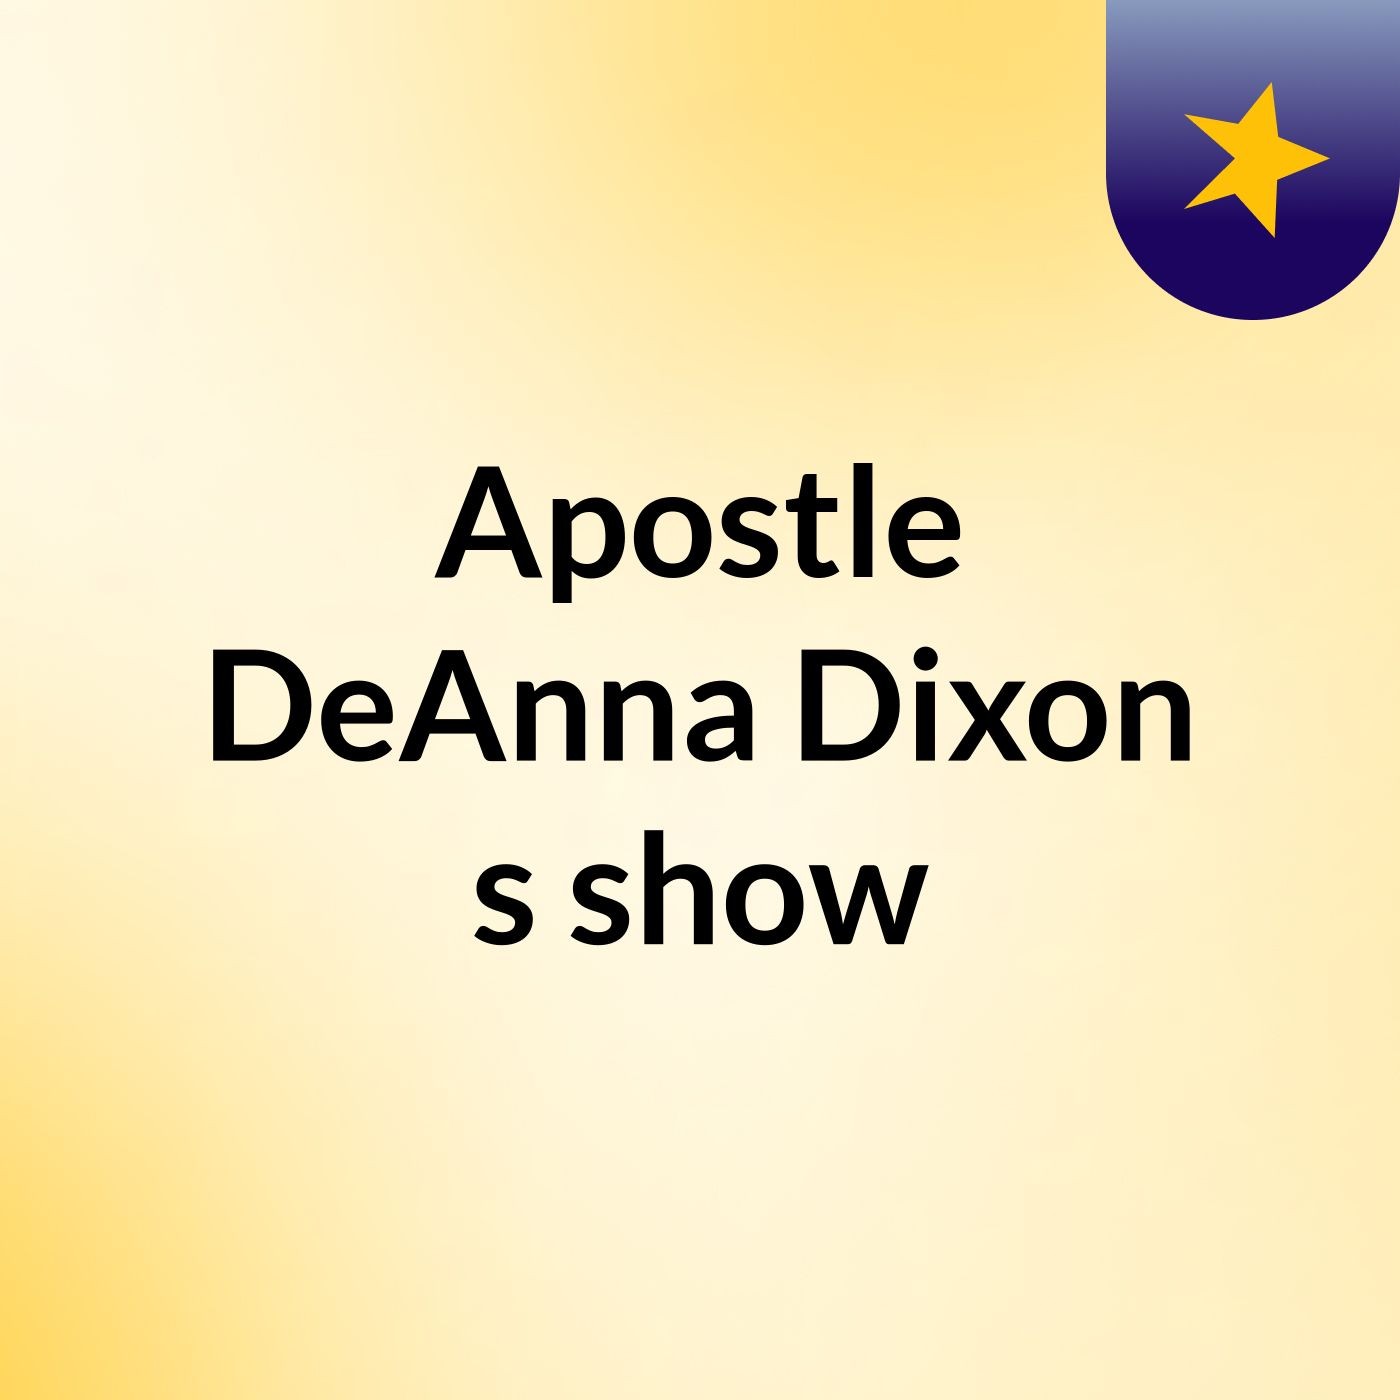 APOSTLE DEANNA DIXON SING PART 1-" I'M LIVING AGAIN "